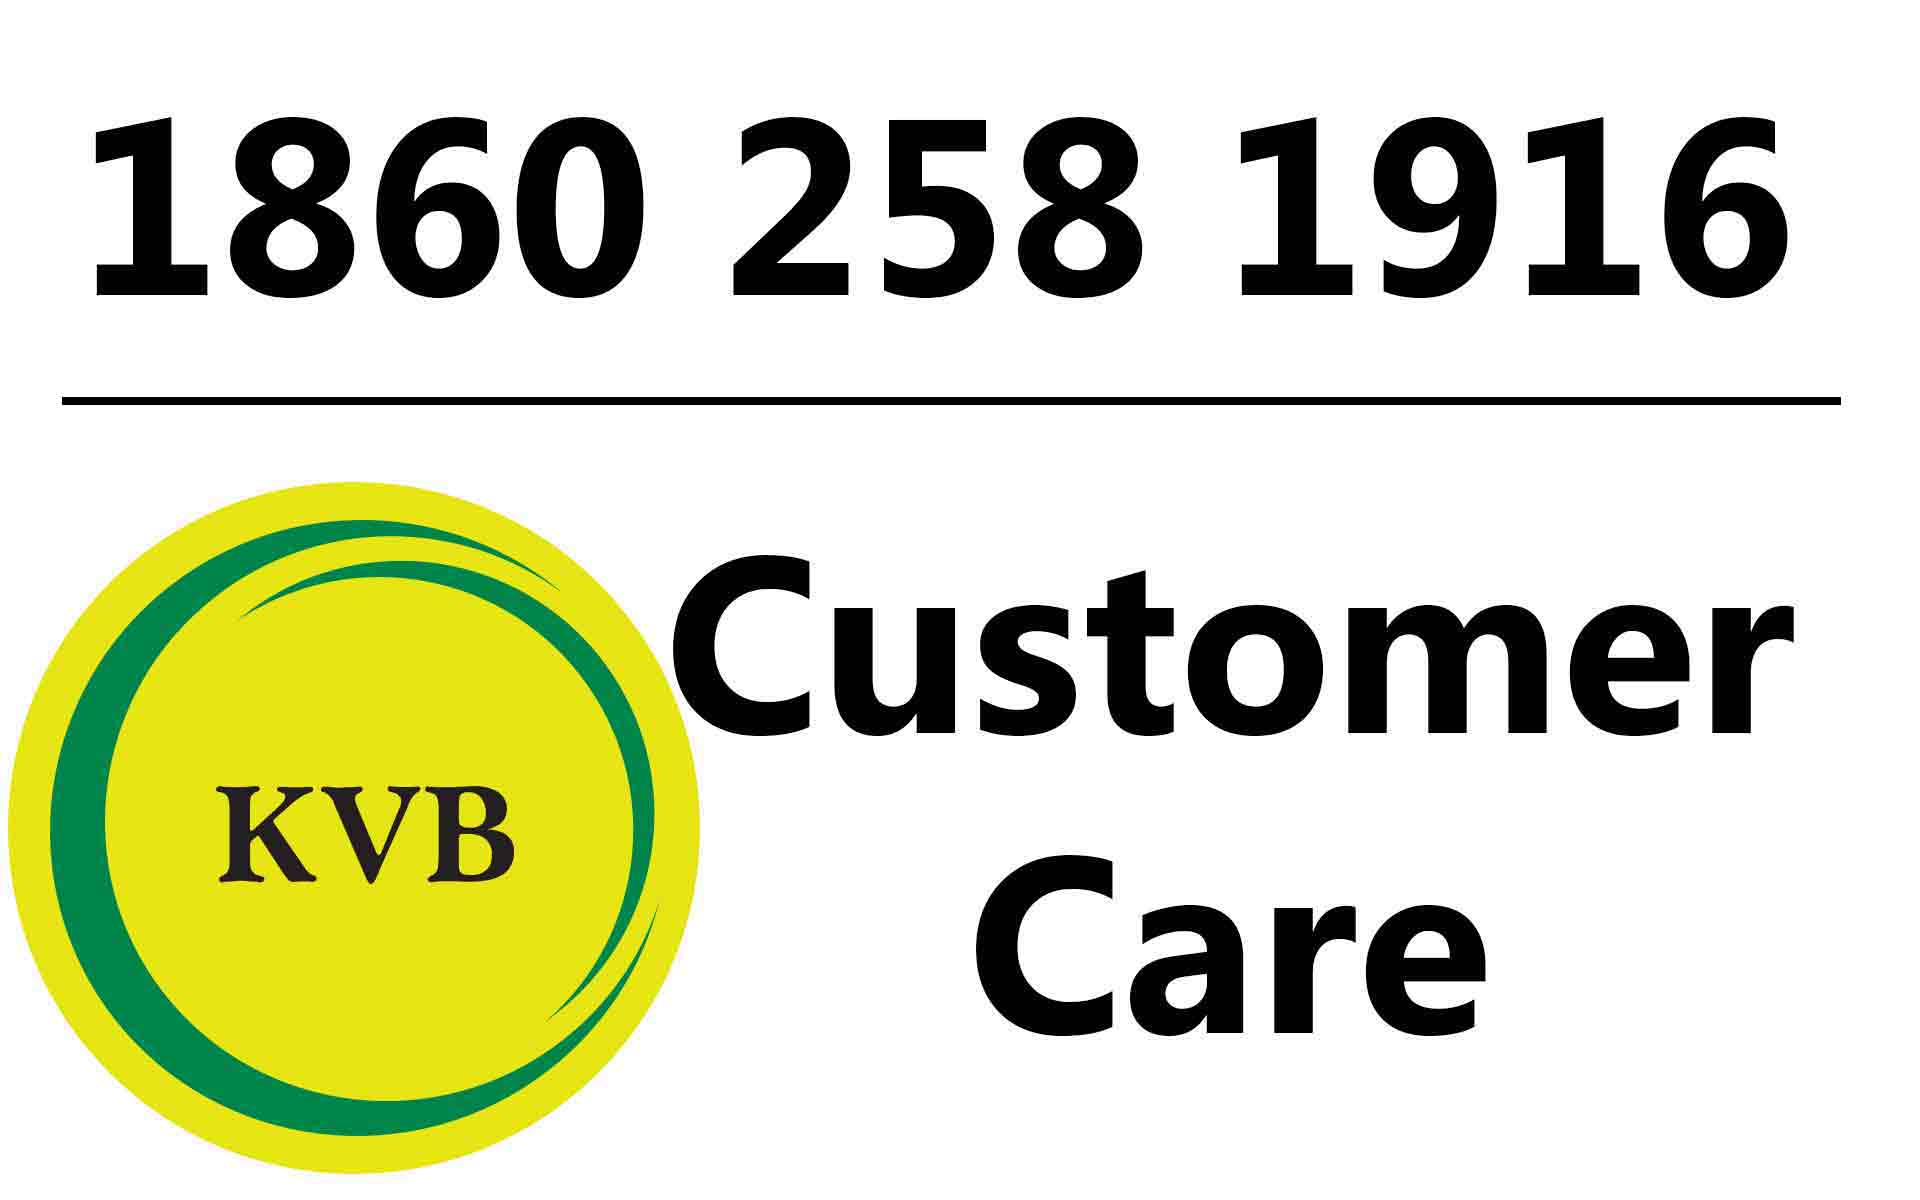 kvb-customer-care-number-1860-258-1916